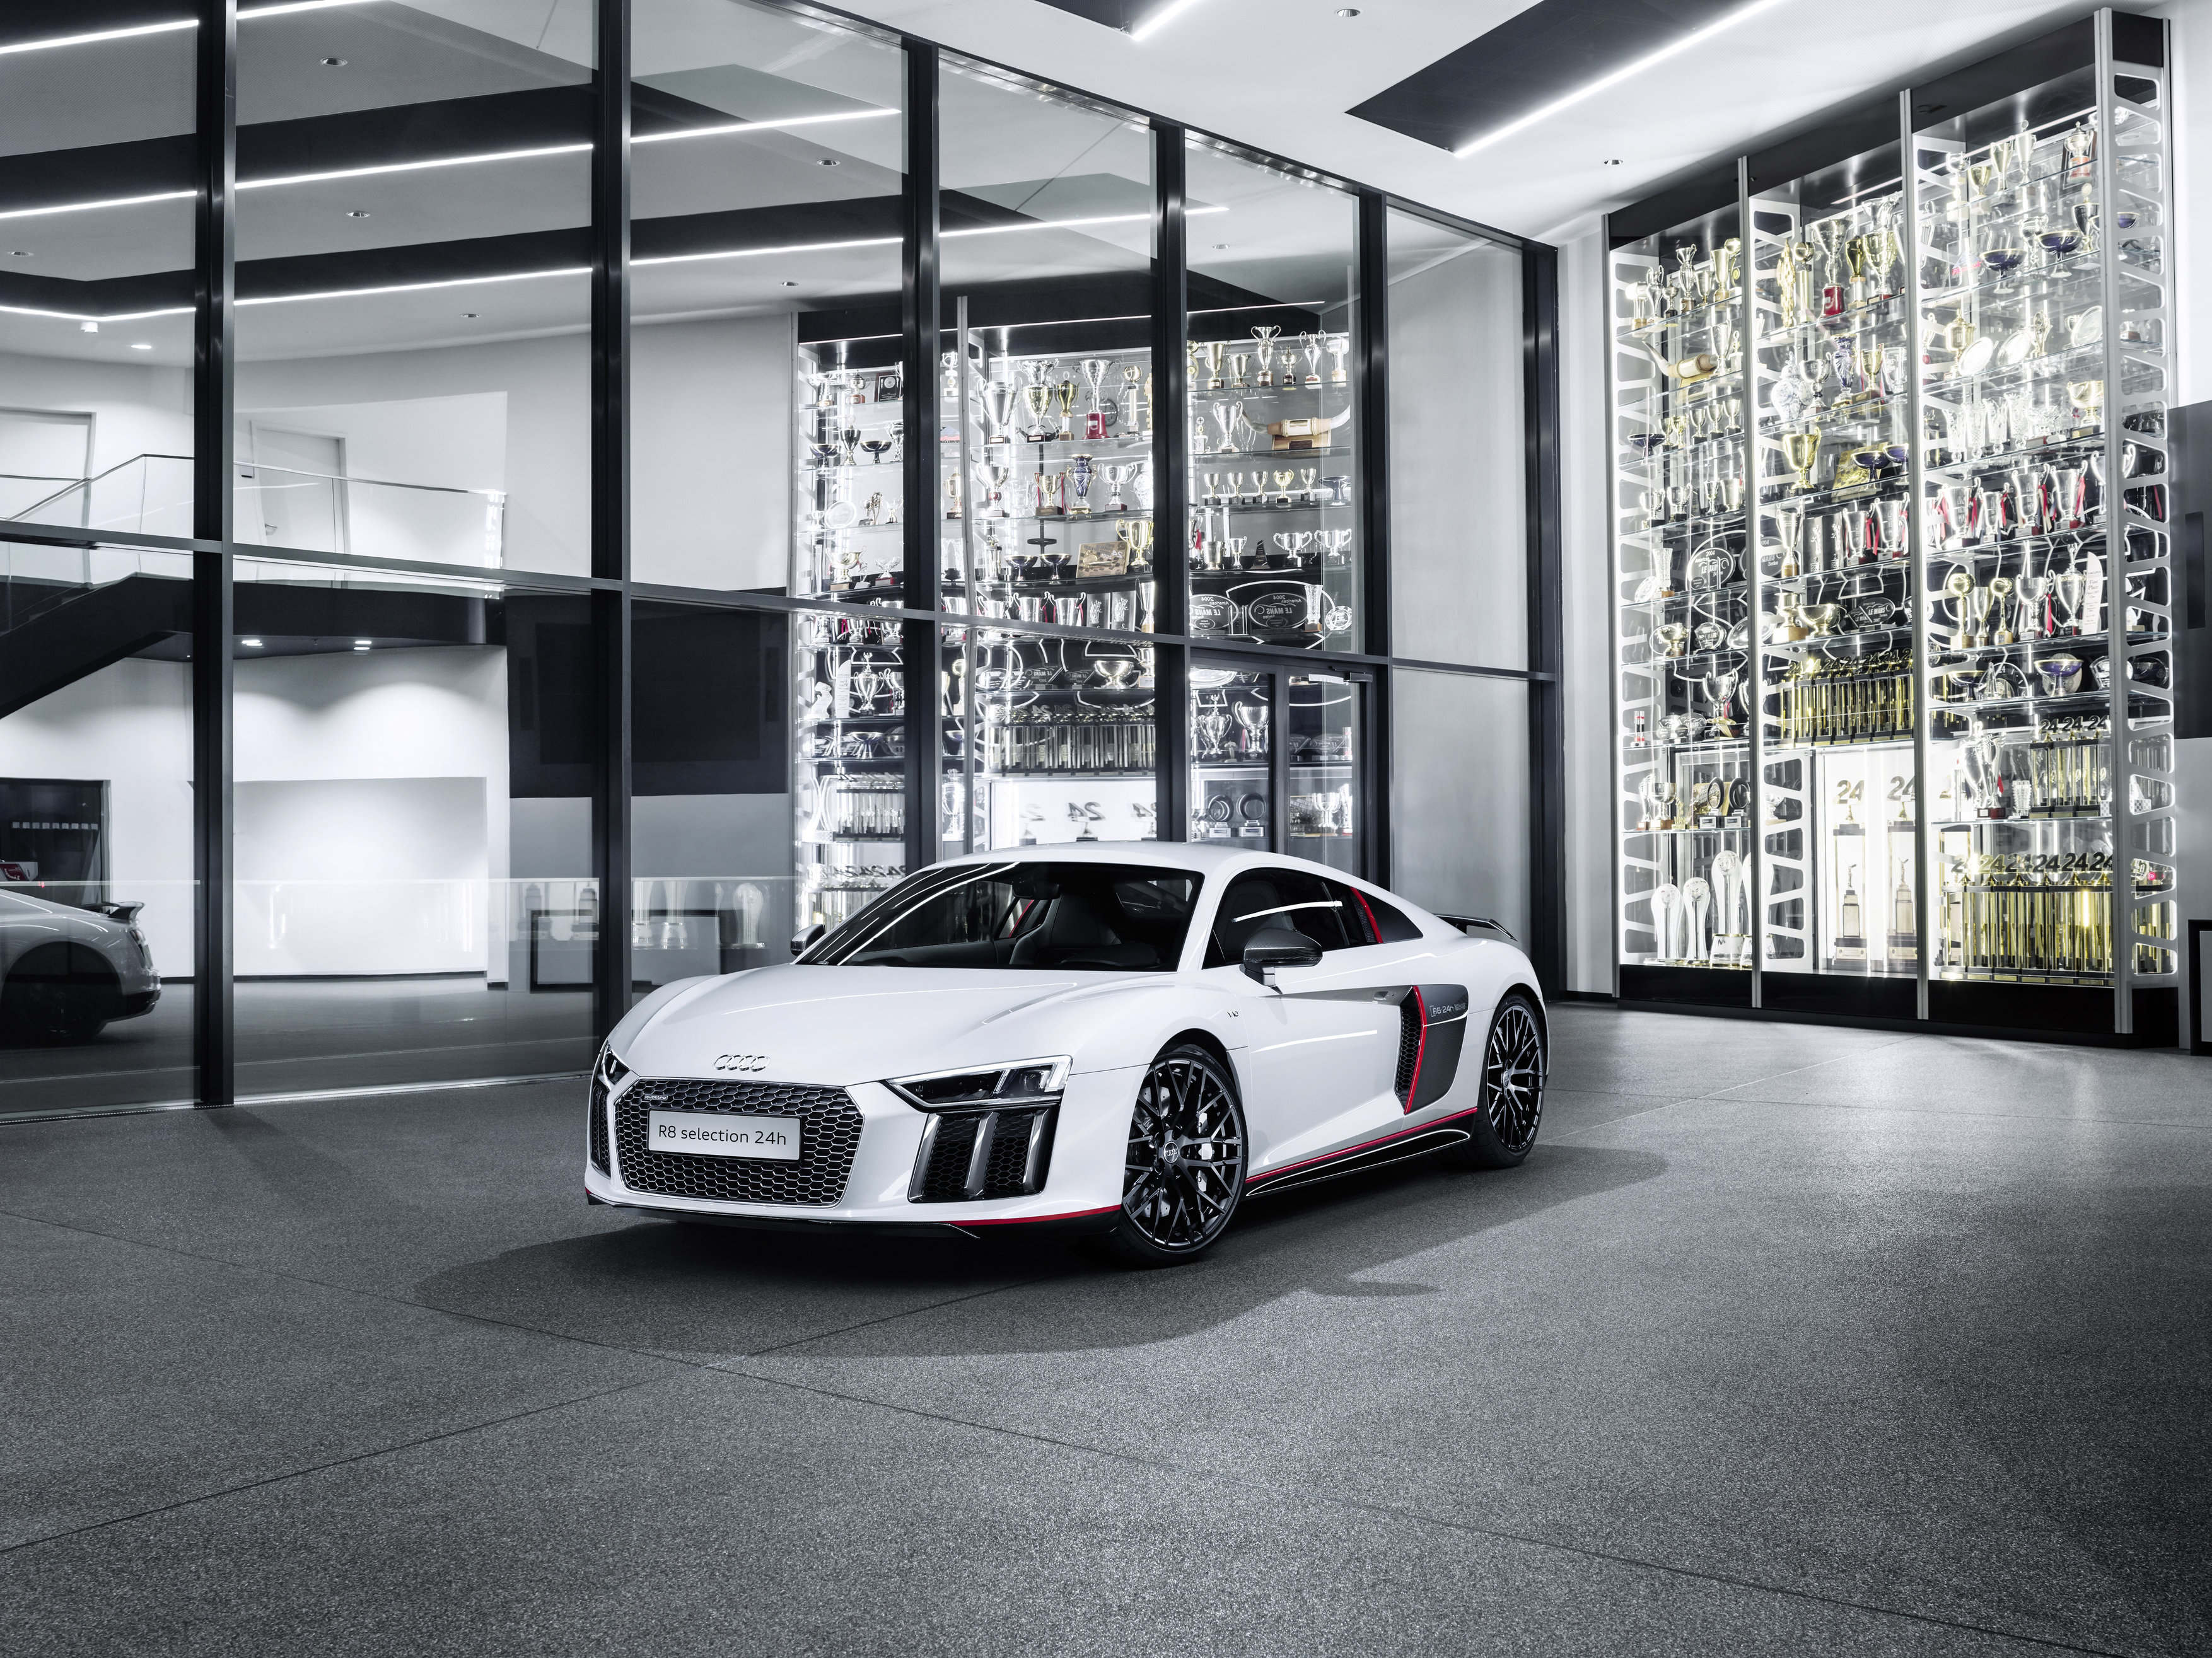 Audi R8 Coupé V10 Plus “Selection 24h”, homenaje al ganador de Le Mans